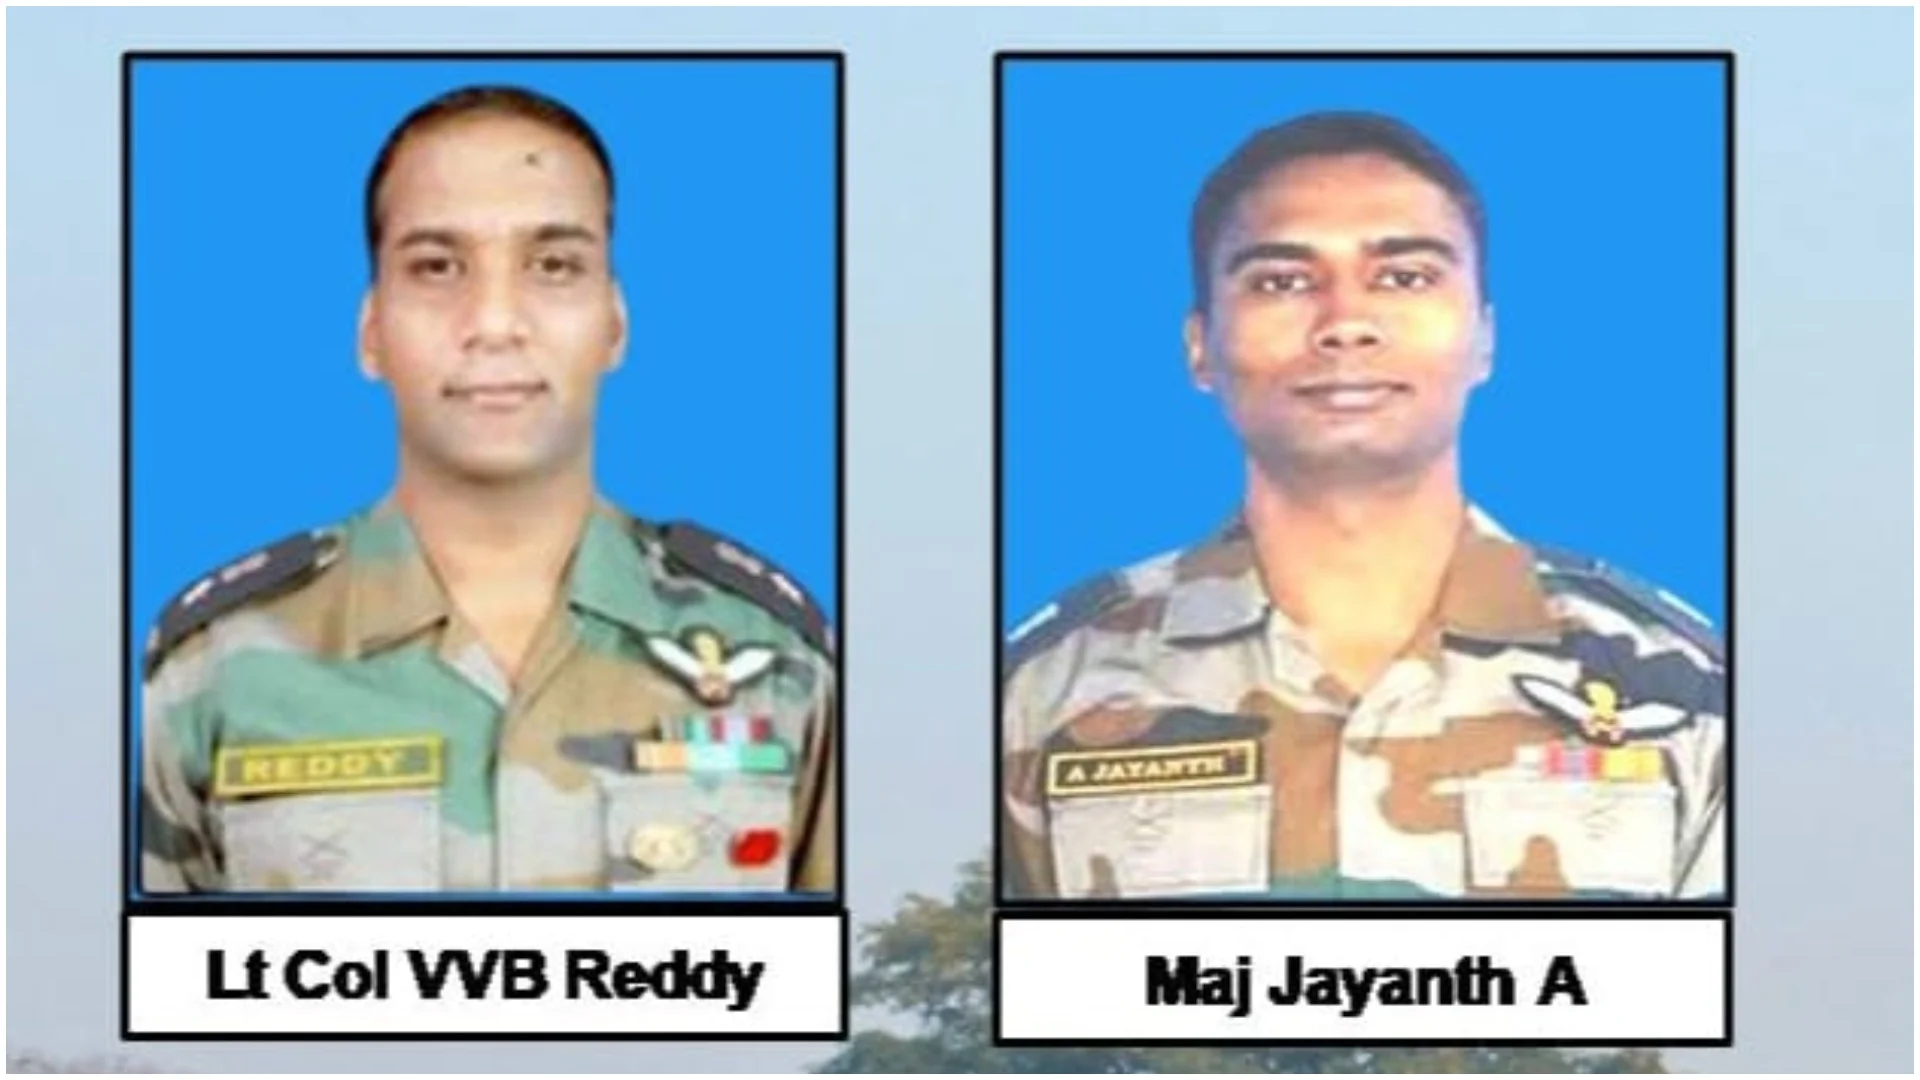 भारतीय सेना चीता हेलीकाप्टर दुर्घटना : लेफ्टिनेंट कर्नल वीवीबी रेड्डी और मेजर जयंत मृत पाए गए